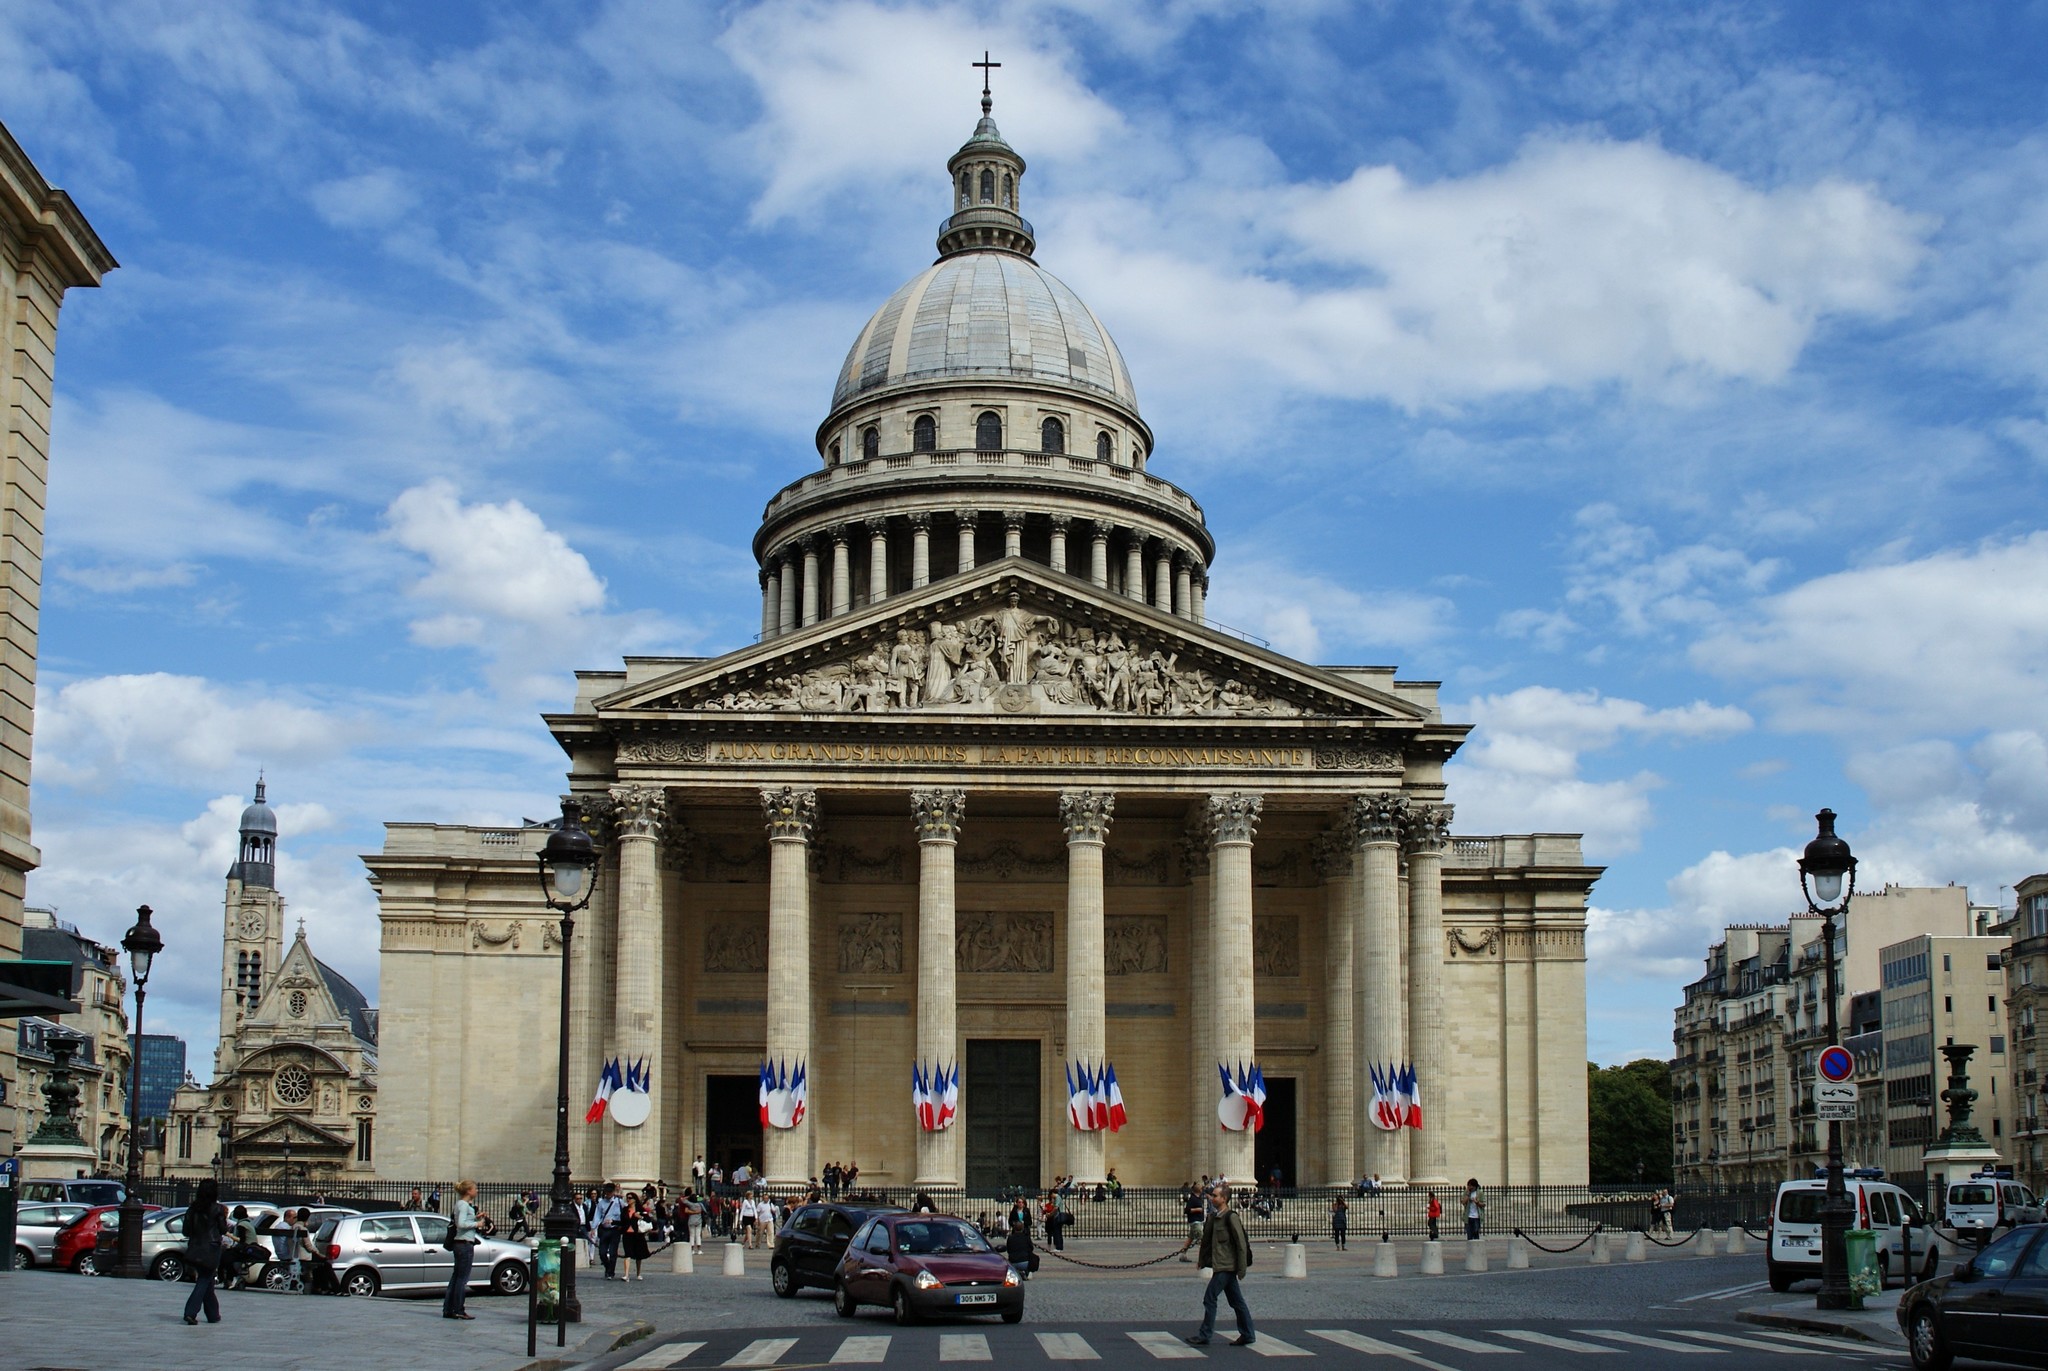 El Panteón - Horarios, precios y como llegar - Descubri París